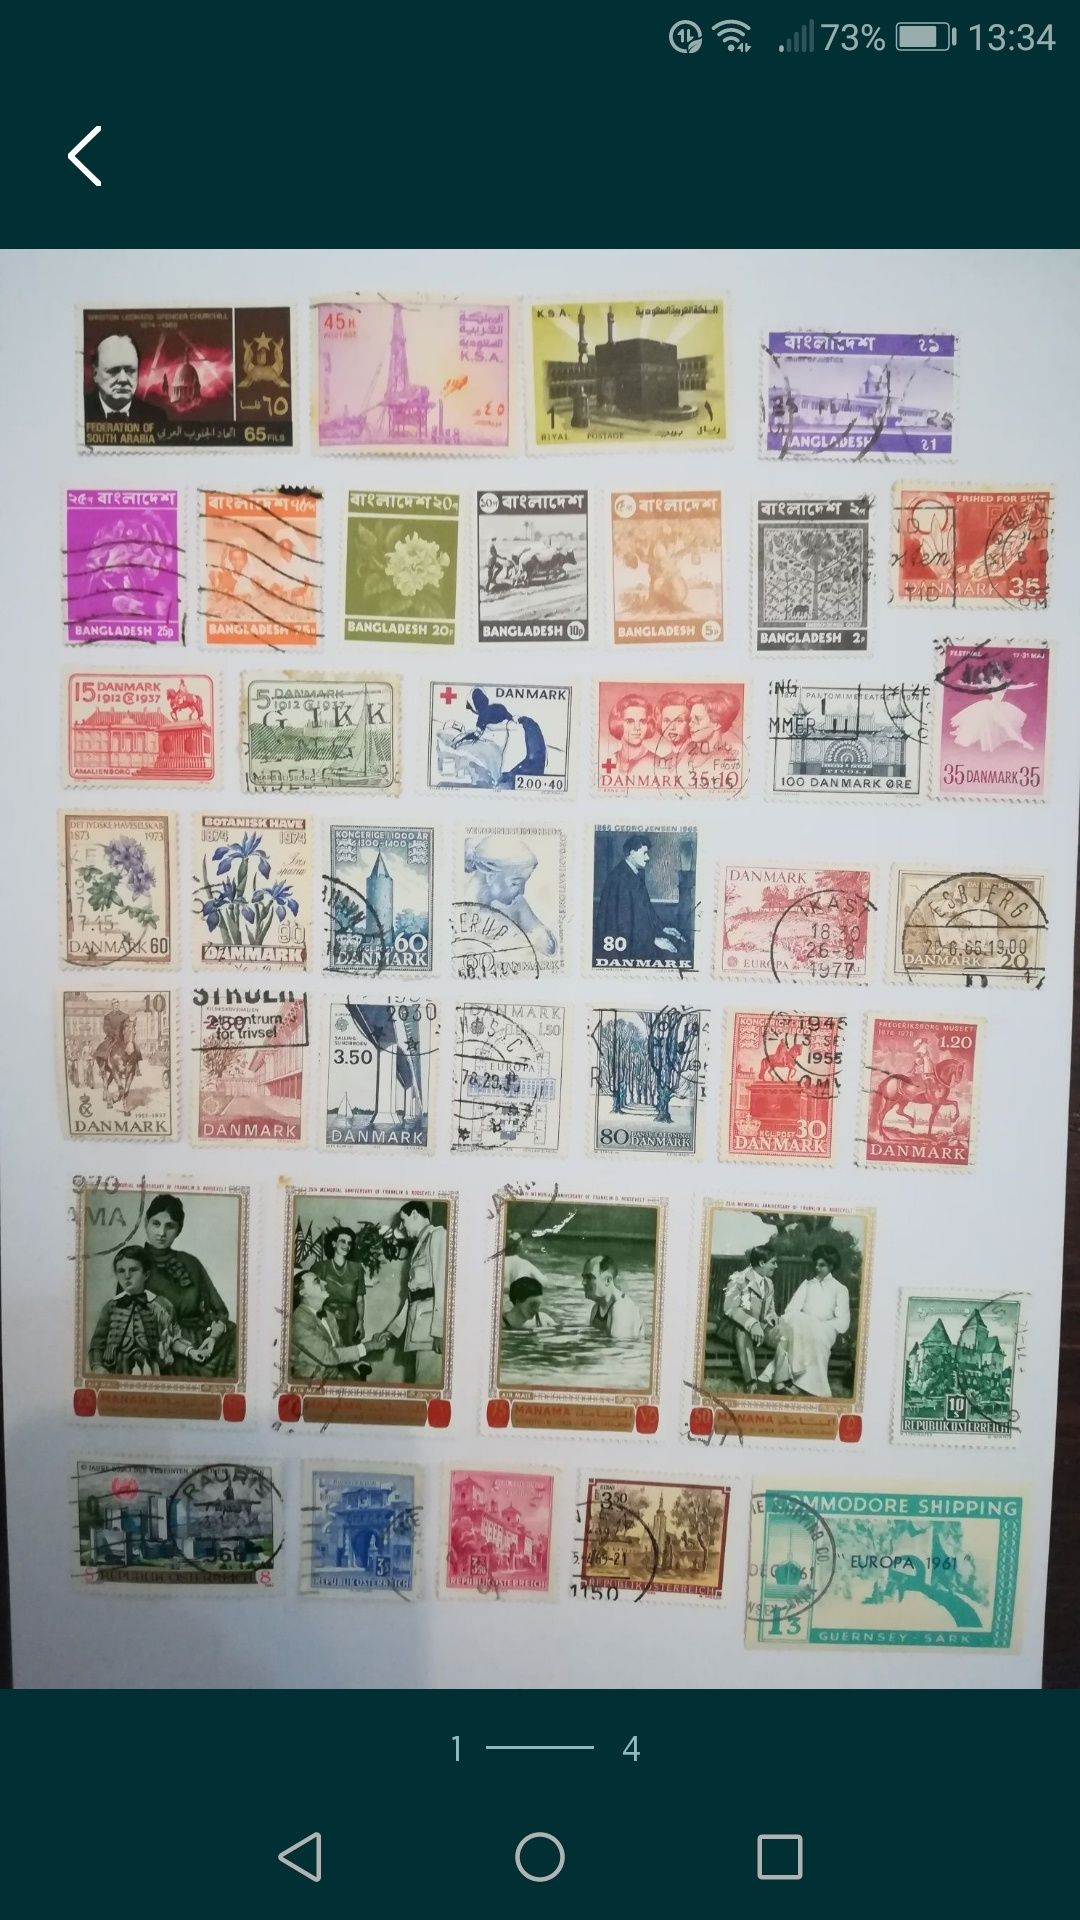 7 Grandes lotes de selos com 279 selos (média de 40 selos/lote), anos